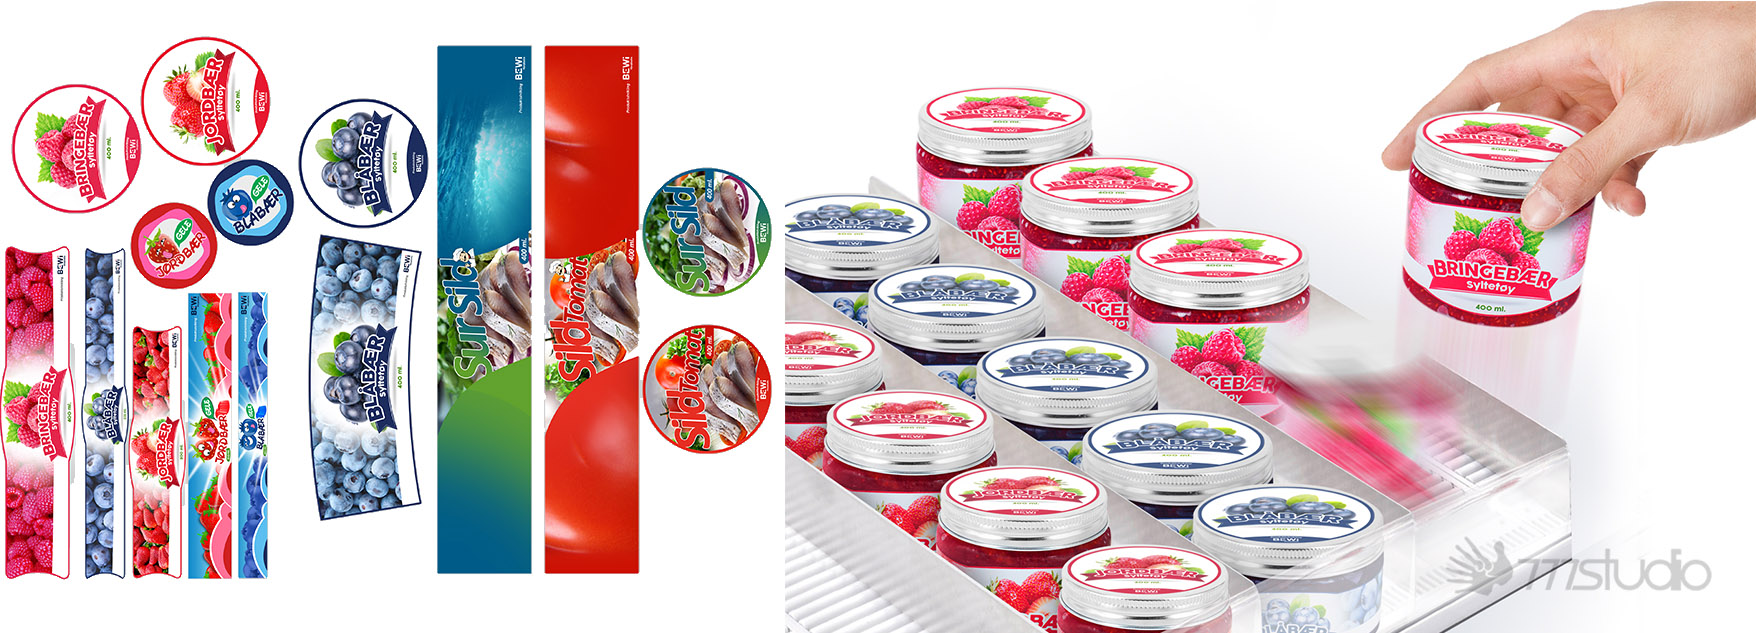 Chiang Mai Packaging Branding Design Branding design